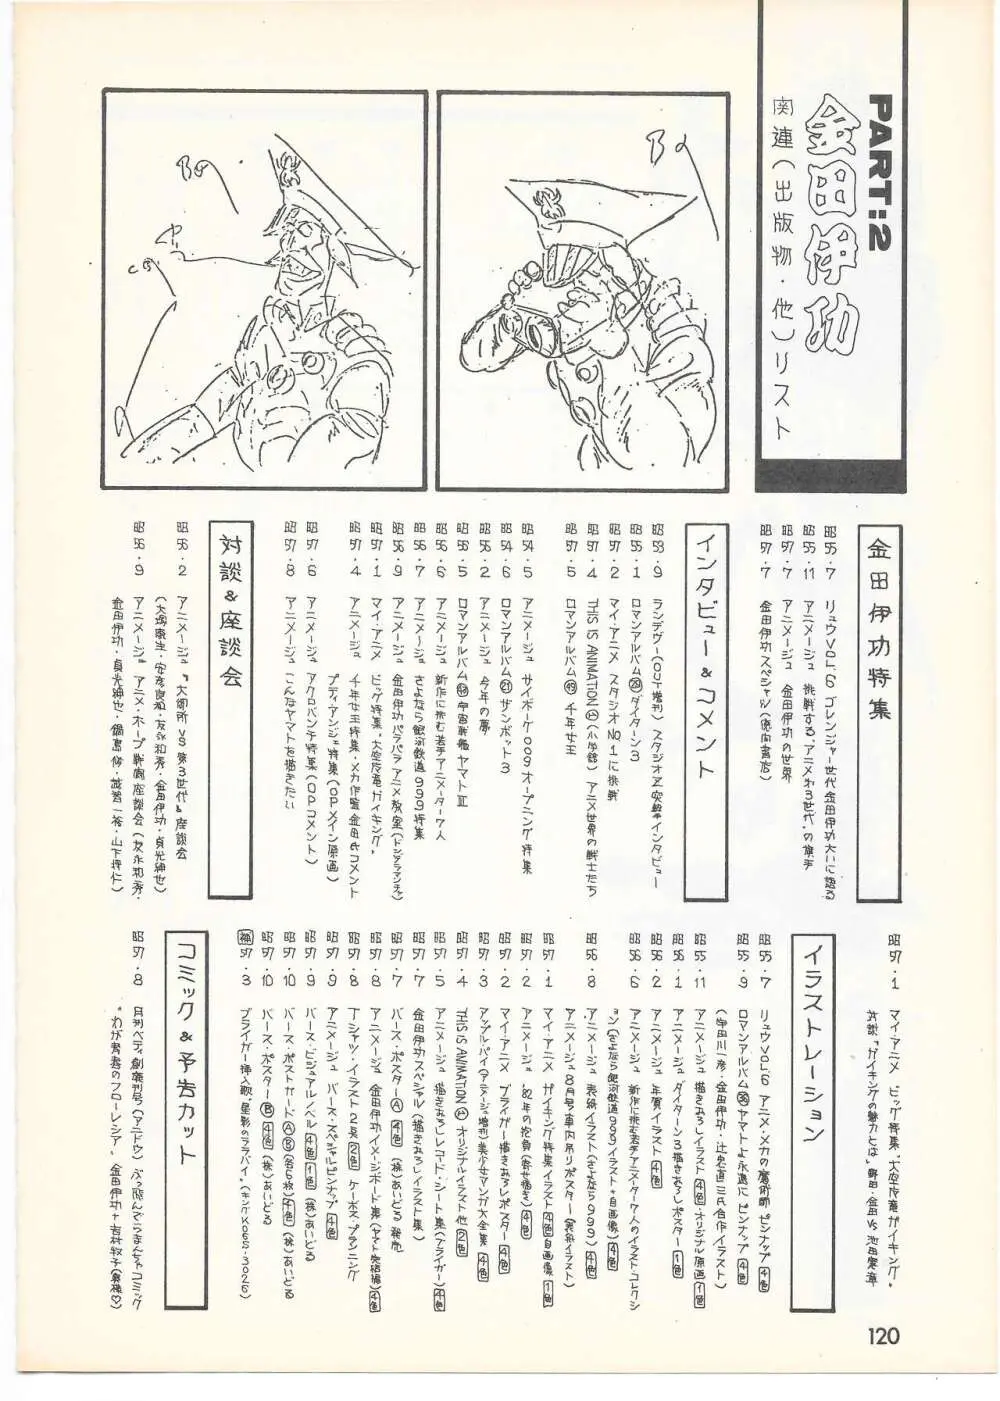 THE ANIMATOR 1 金田伊功特集号 115ページ